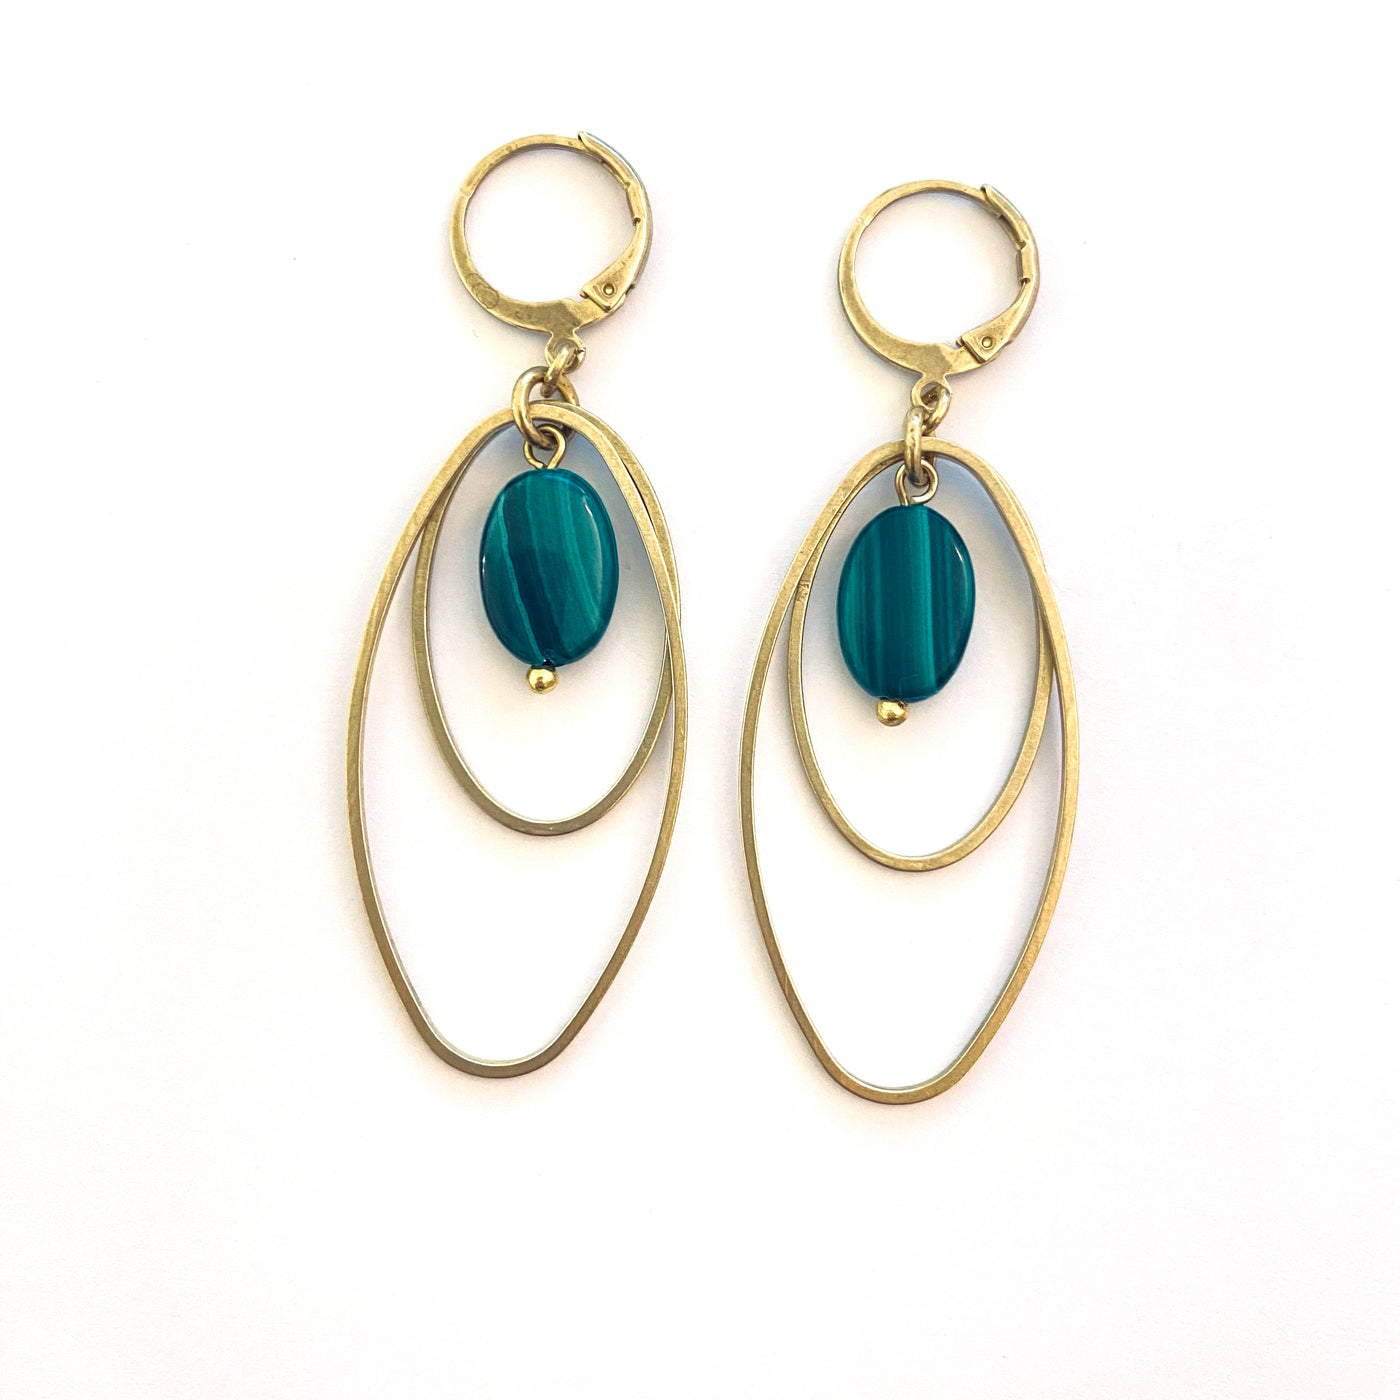 HAZEL - Green brass earrings